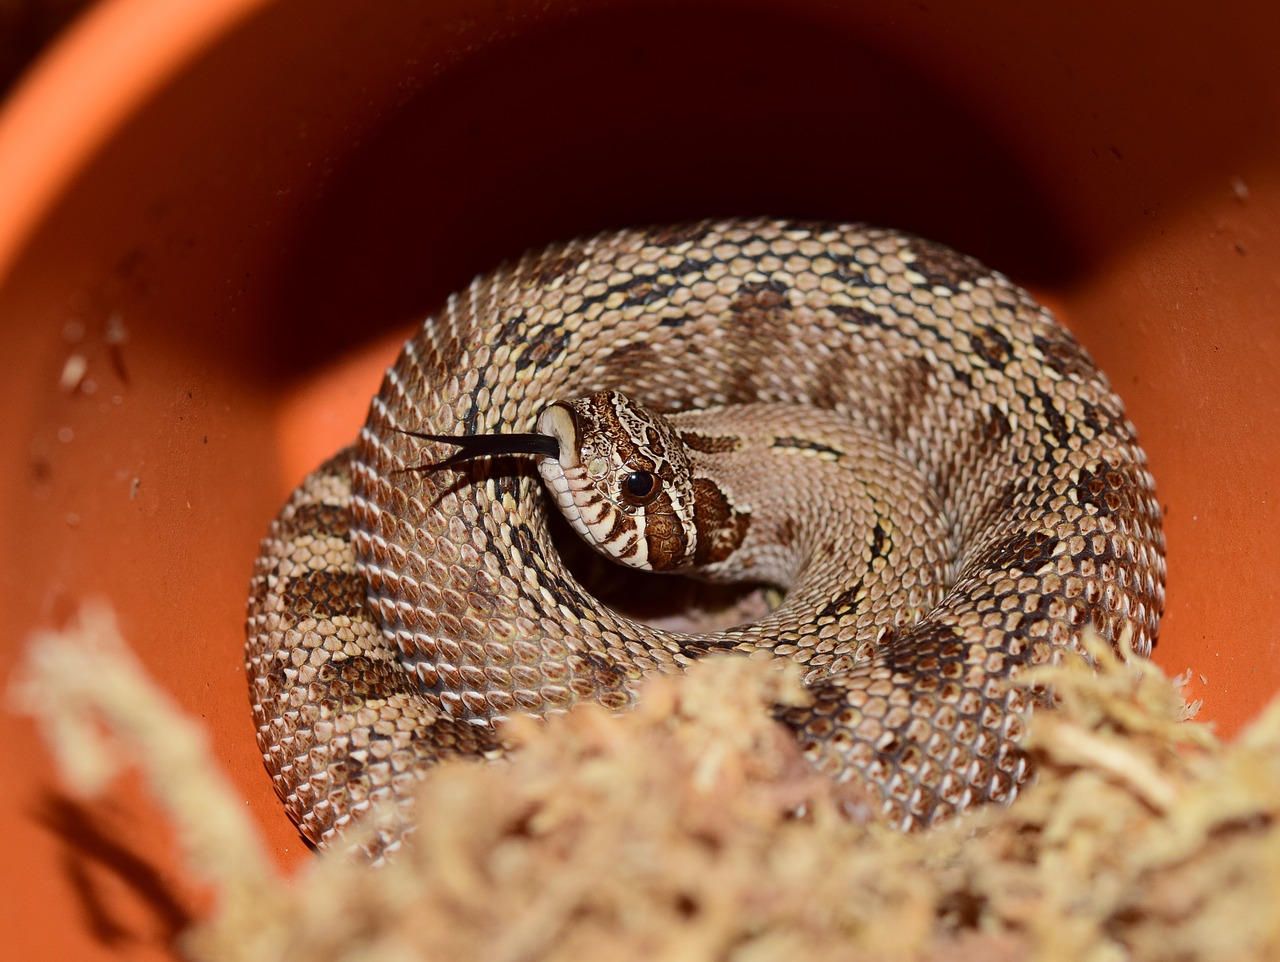 heterodon nasicus snake natter free photo